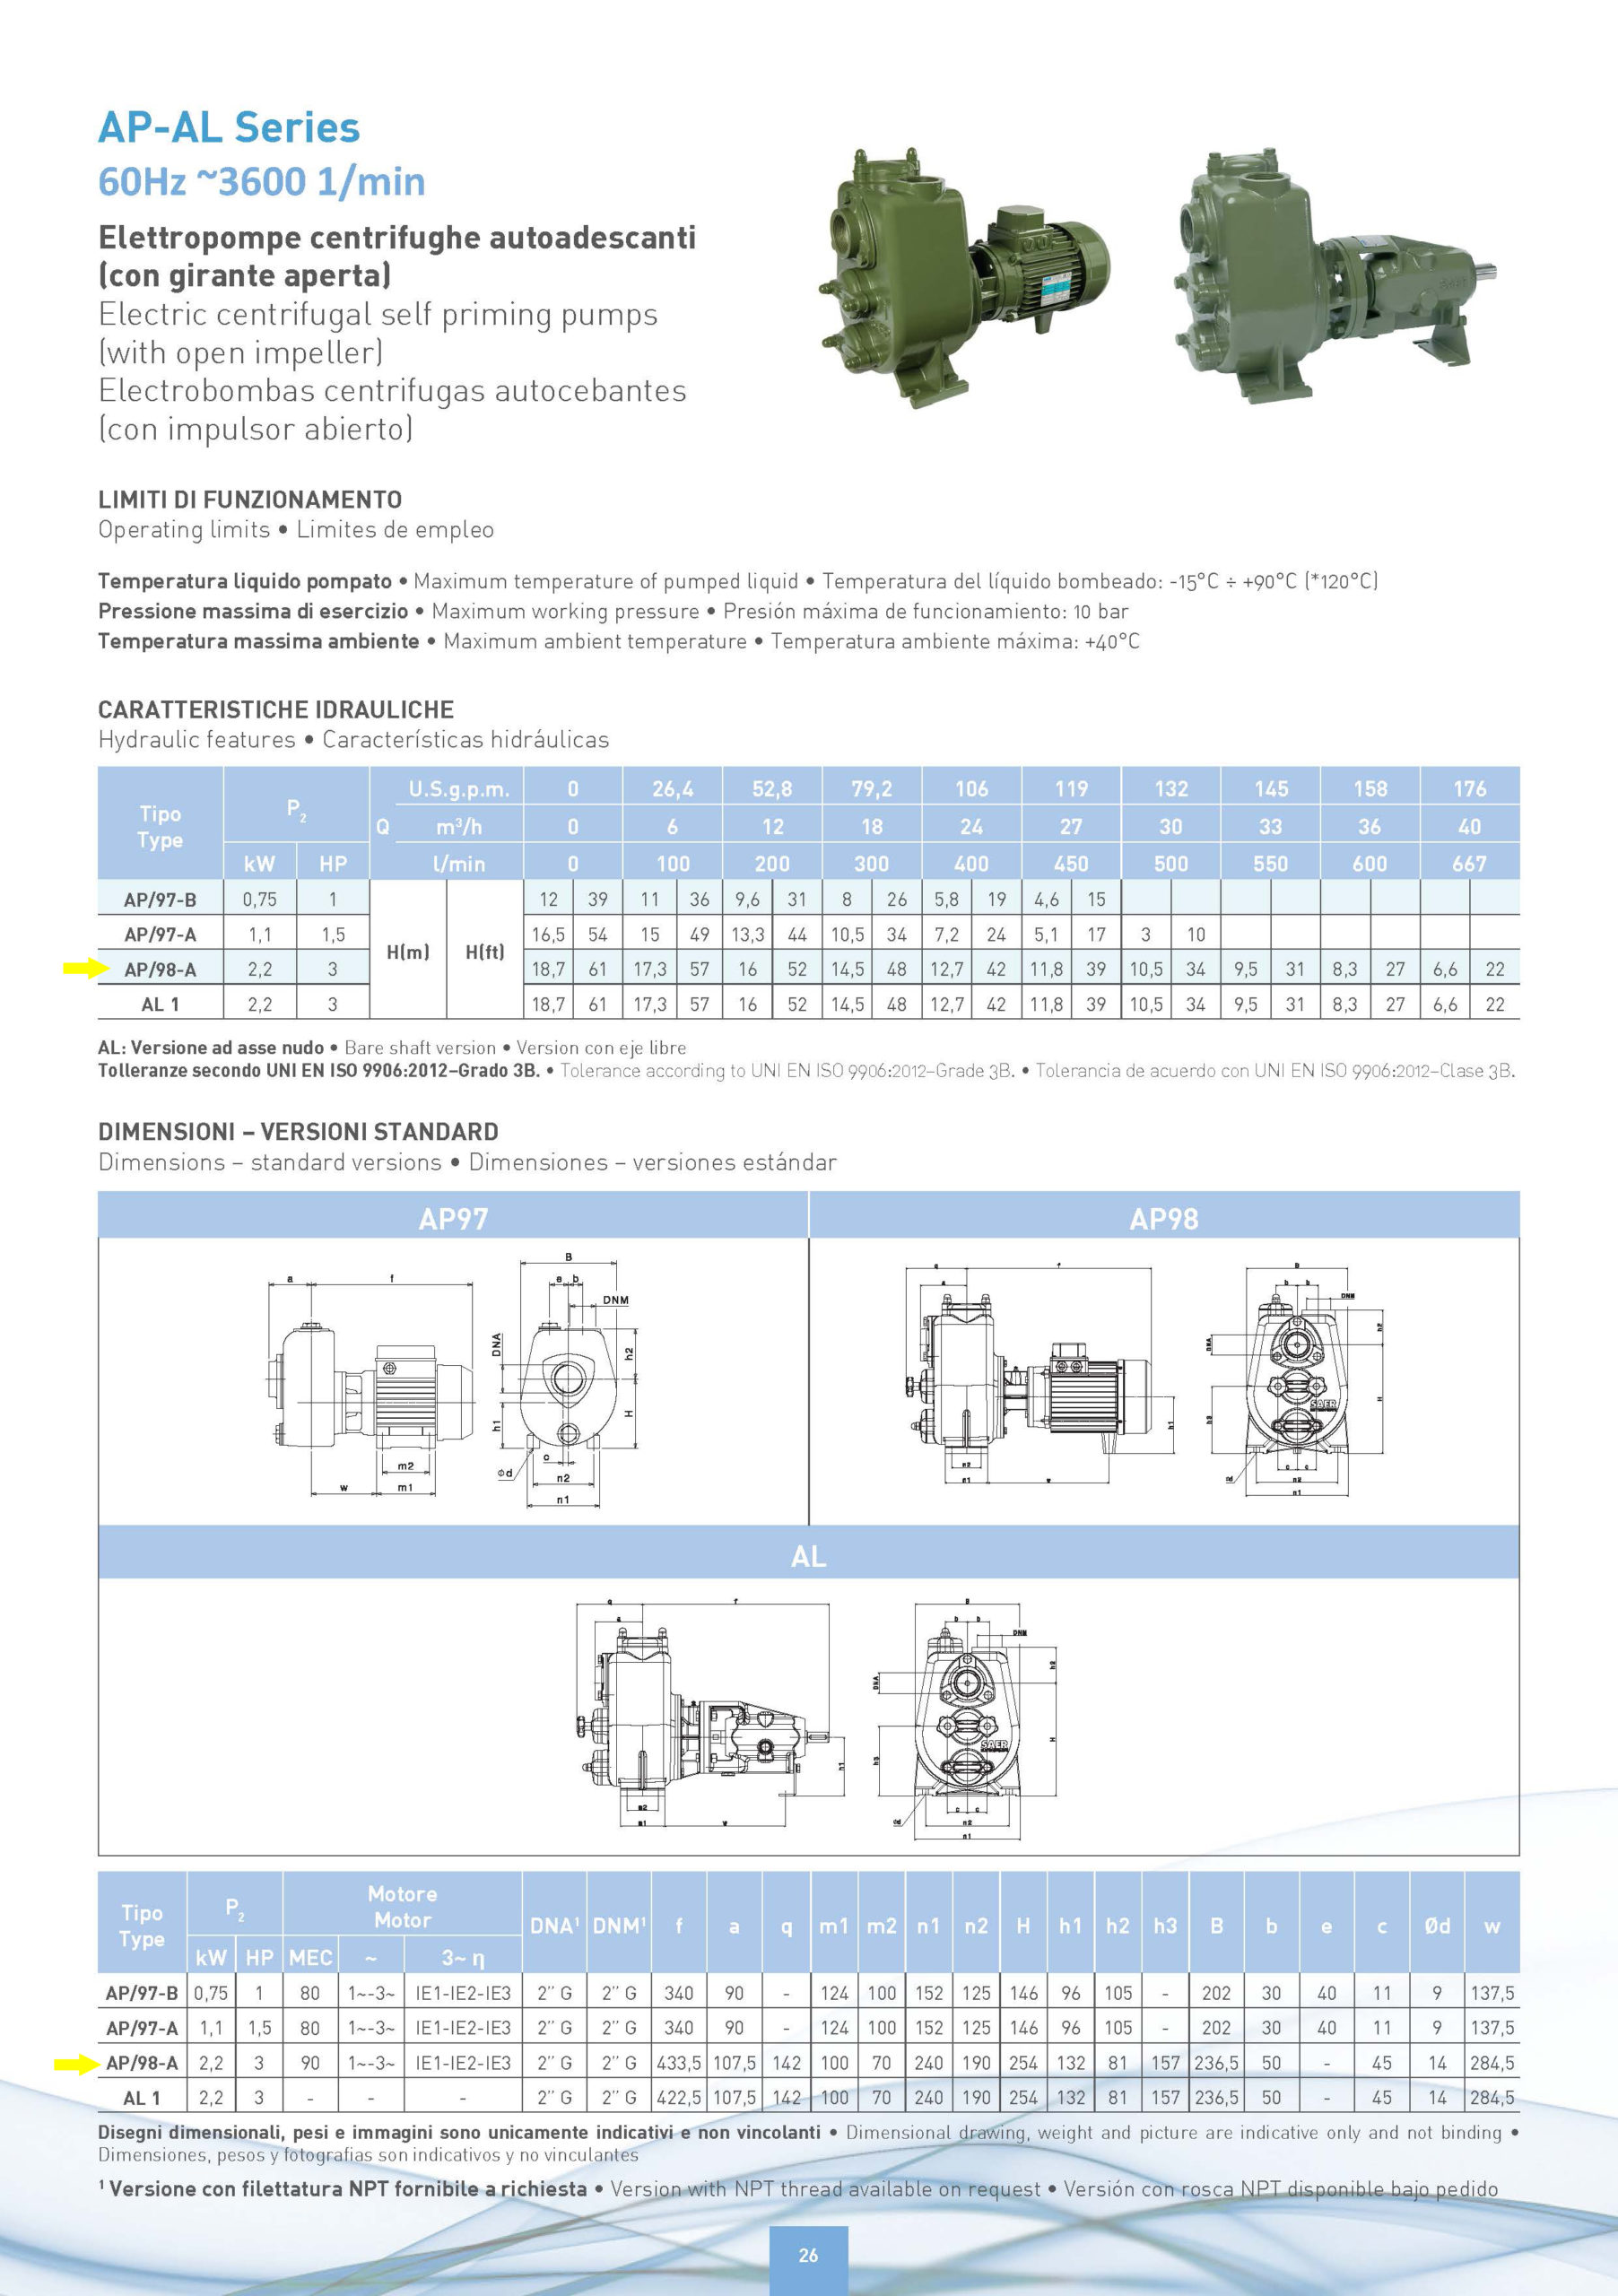 SAER-USA - AP/98-A Threaded Centrifugal Pump — 10,560 GPH, 3 HP, 2 In. Ports, 230 Volts